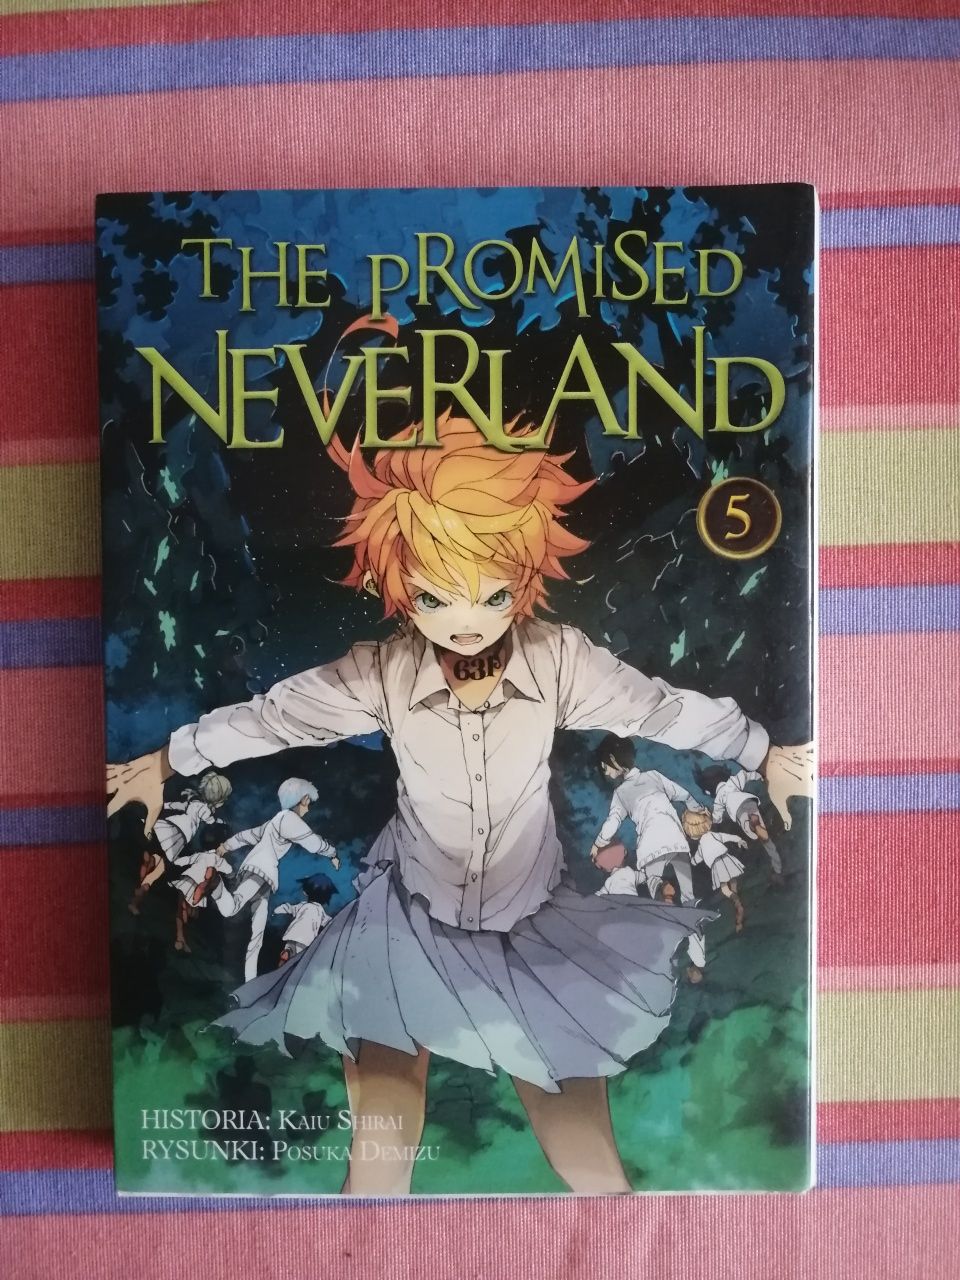 Manga "The Promised Neverland" tom 5